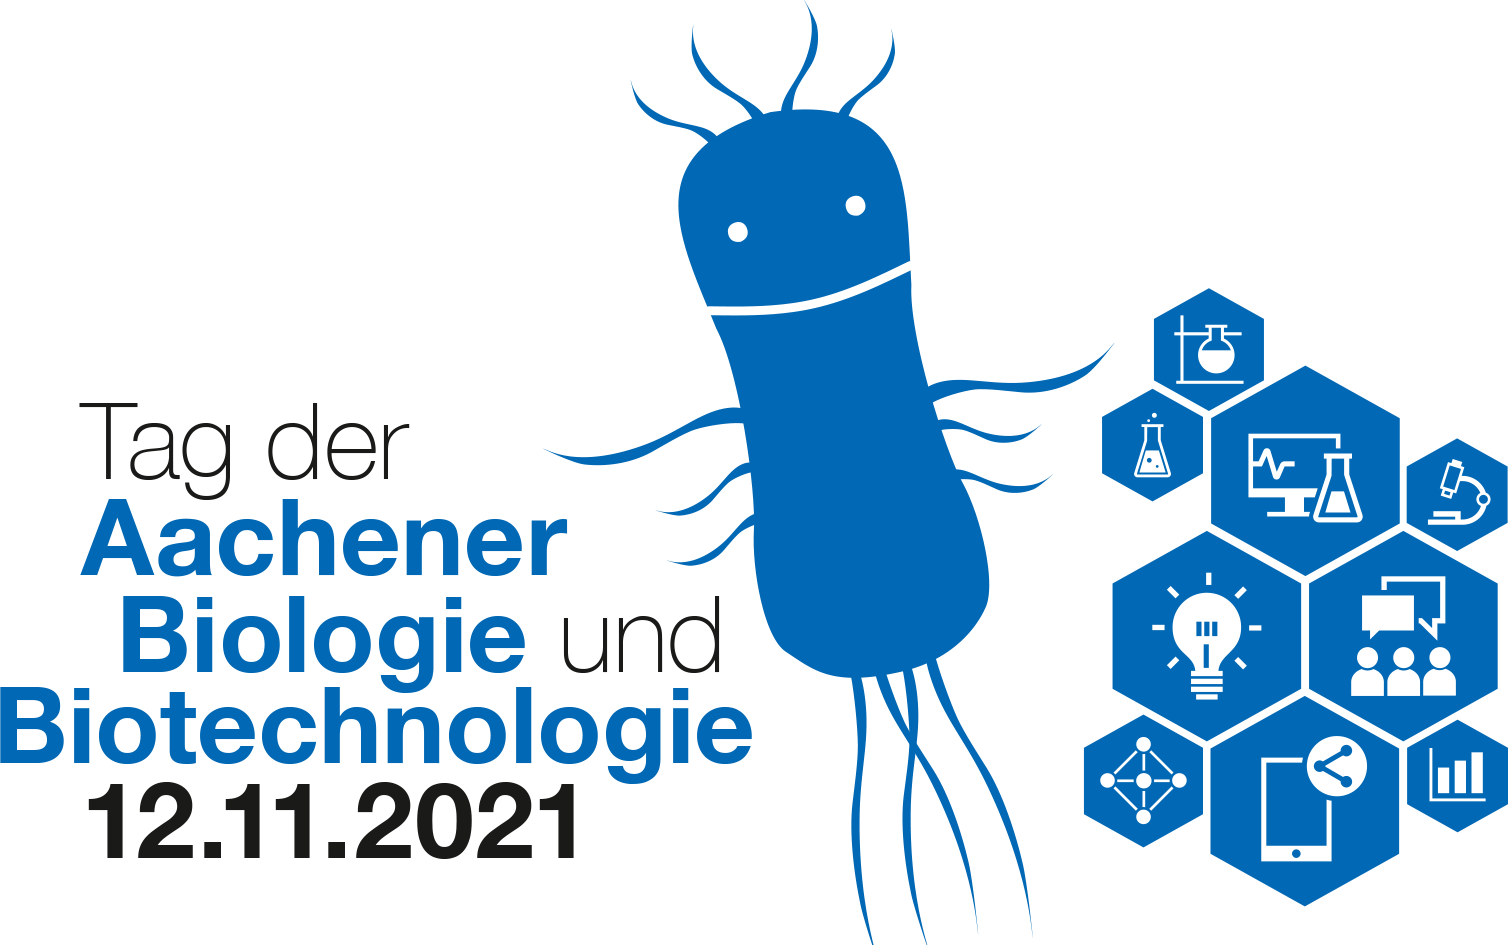 Tag der Aachener Biologie und Biotechnologie 2021